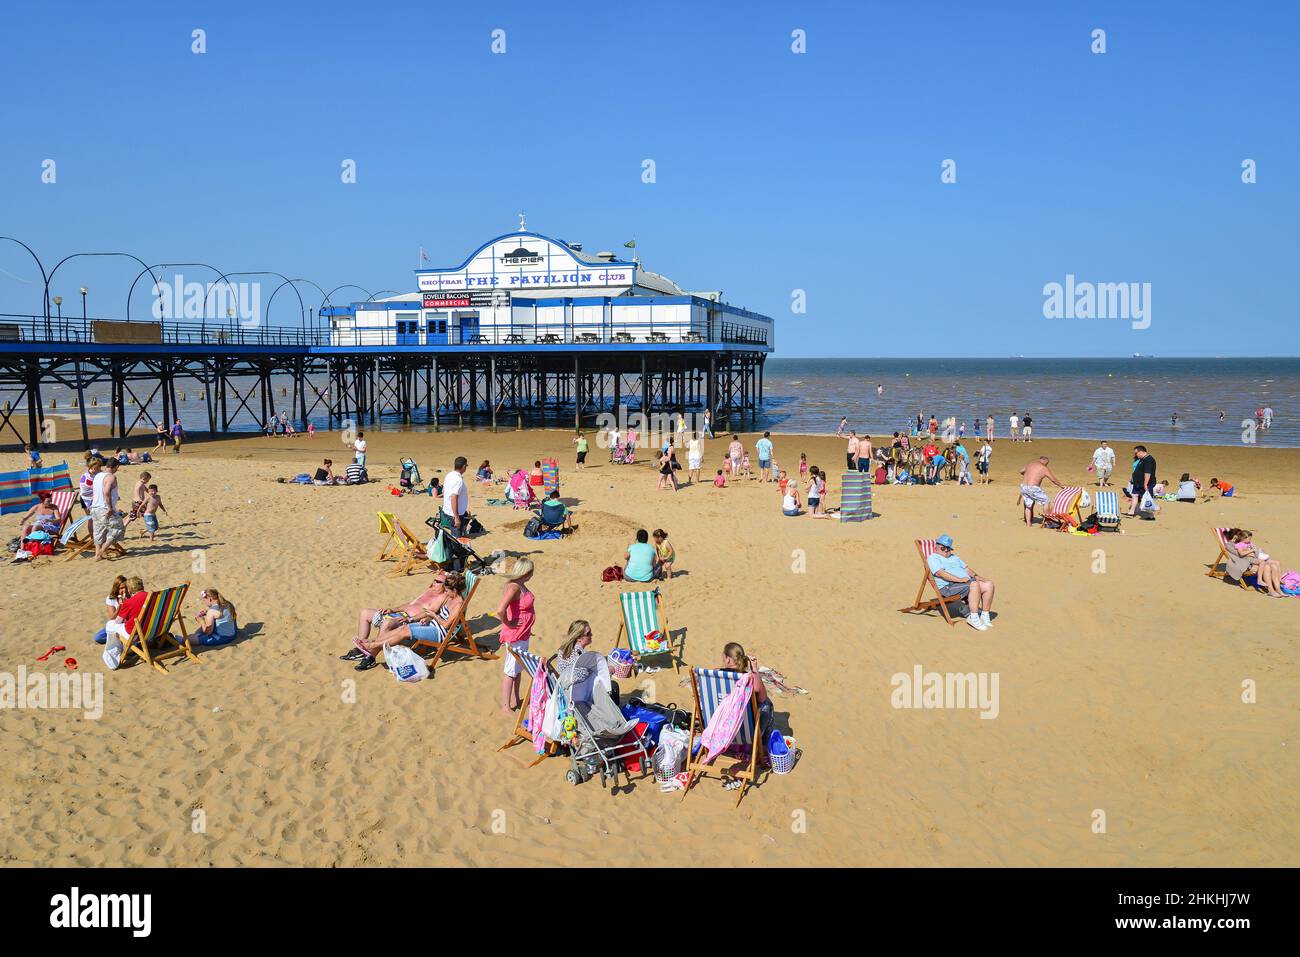 La plage et la jetée de Cleethorpes, Grimsby, Lincolnshire, Angleterre, Royaume-Uni Banque D'Images